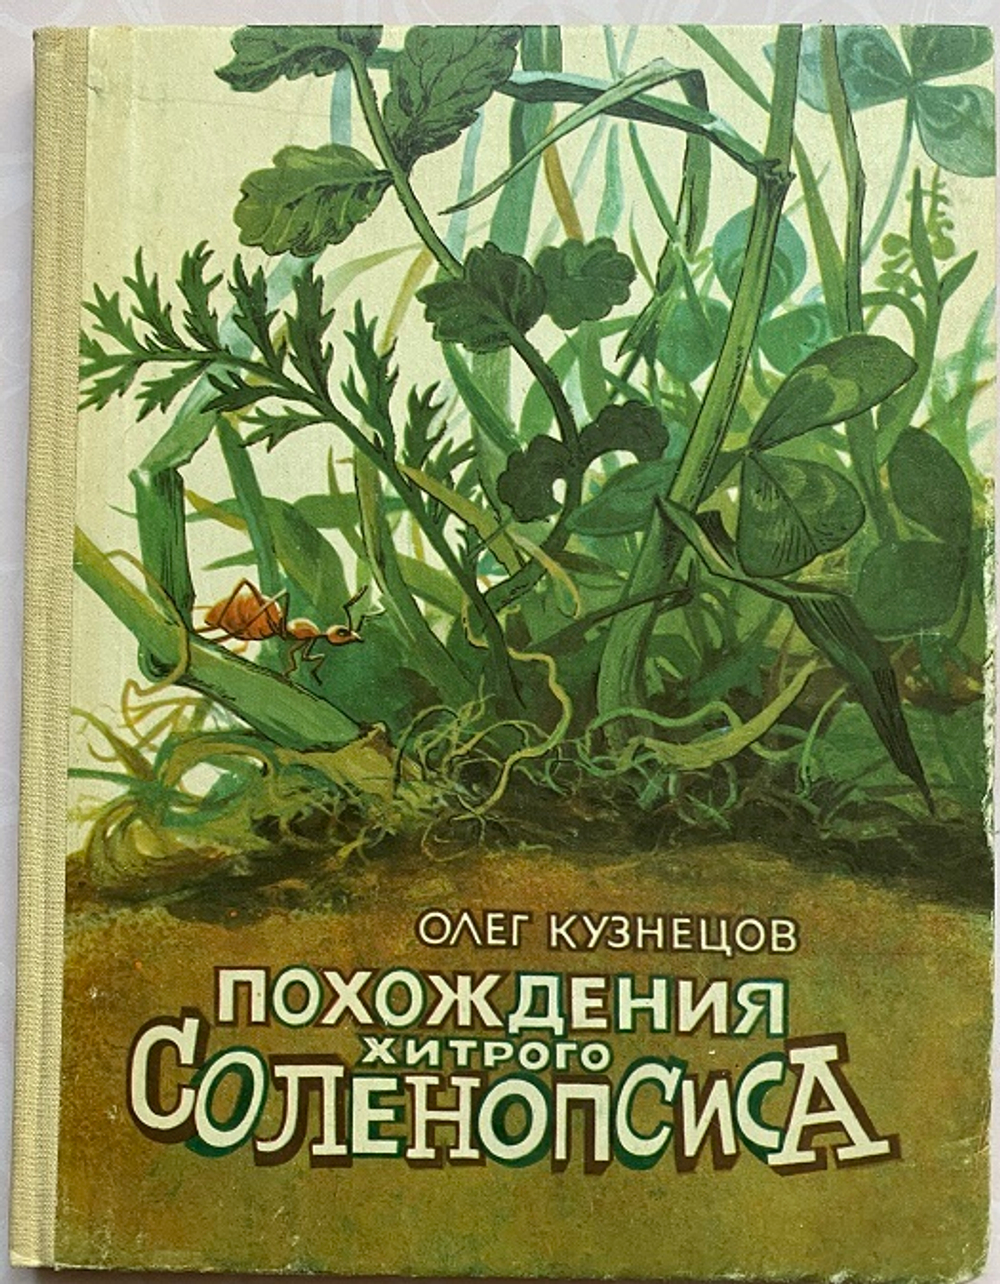 О Кузнецов, Похождения хитрого Соленопсиса, Детская литература, 1991 год